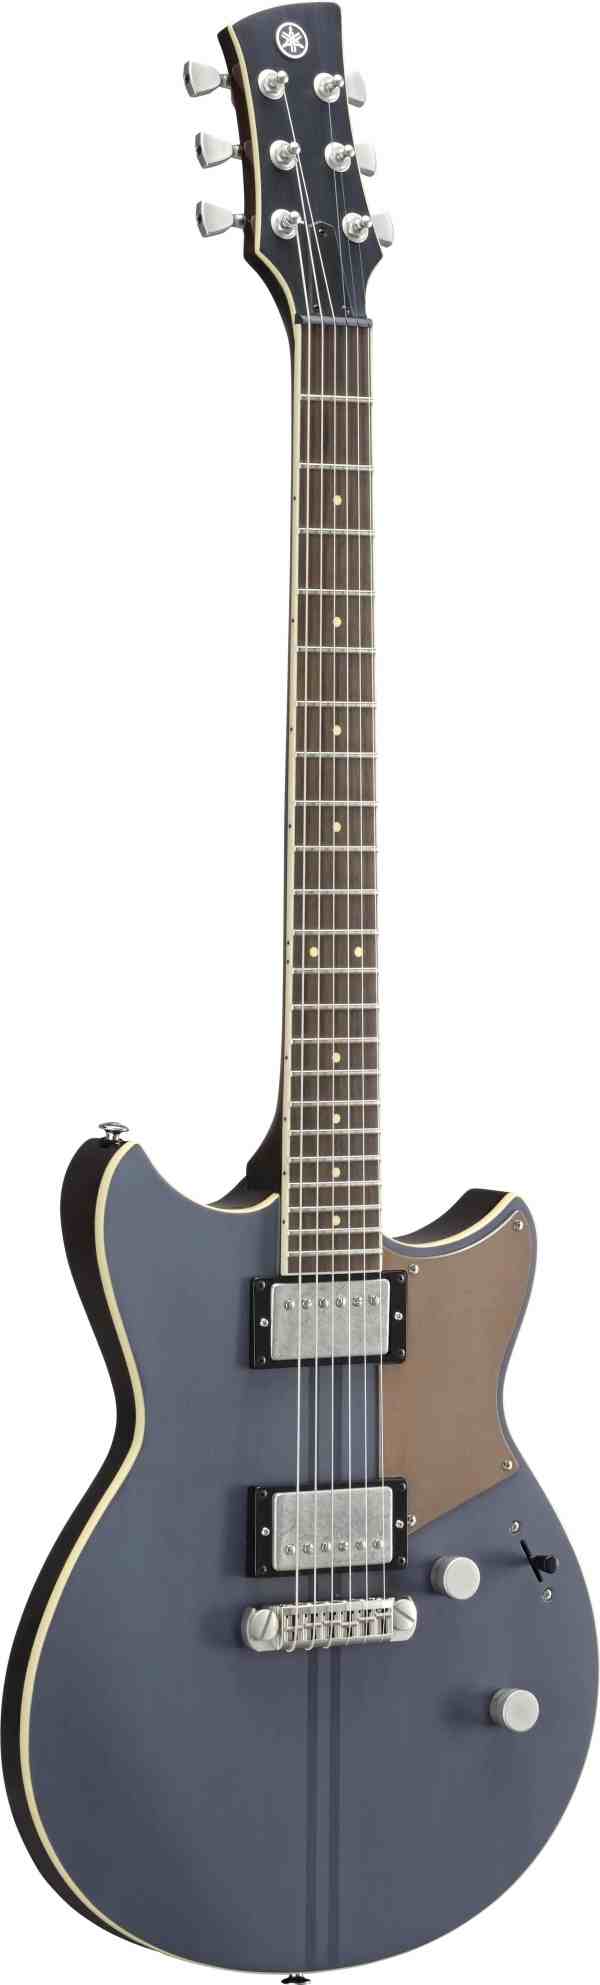 Yamaha Revstar RS820 Guitar